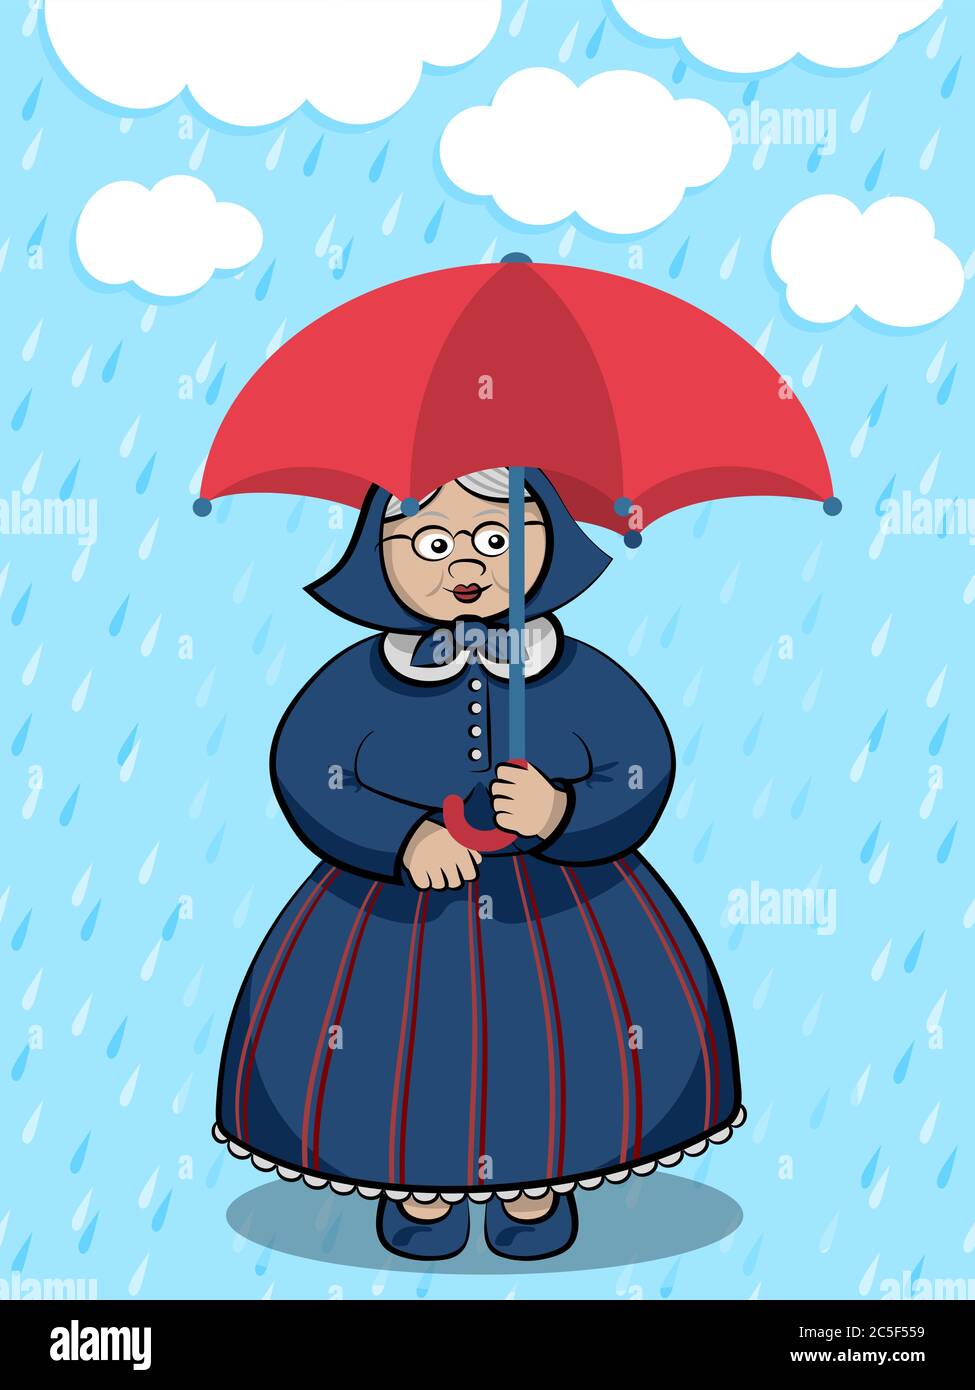 Personnage de dessin animé Funny Granny - Vieille dame qui reste sous la pluie légère avec un parapluie rouge Illustration de Vecteur